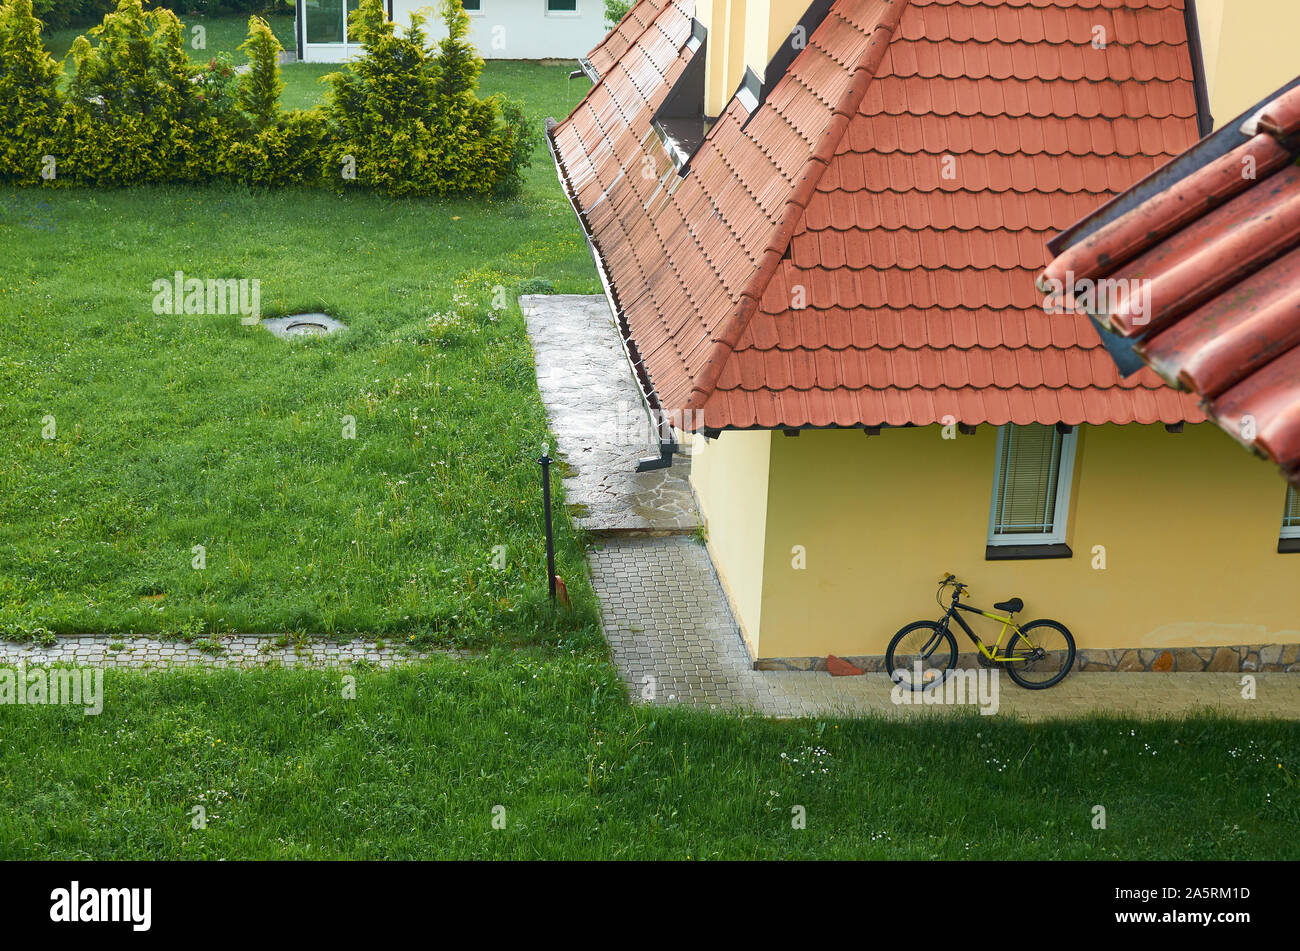 Hinterhof mit einem grünen Rasen und ein Fahrrad auf einem Haus Wand lehnte Stockfoto